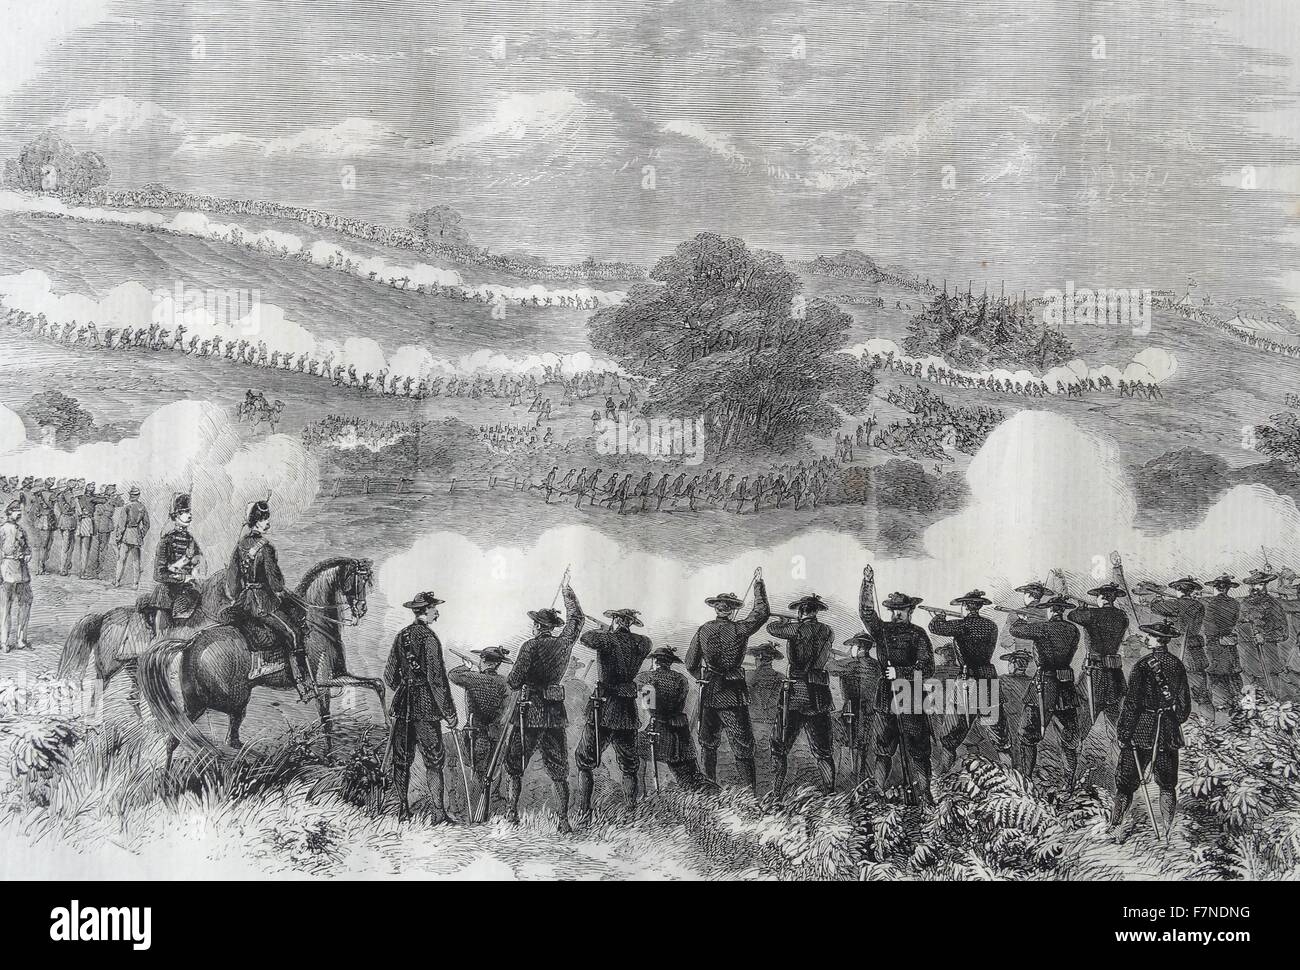 Des soldats italiens au cours d'une bataille dans le soulèvement de 1860 Italien Banque D'Images